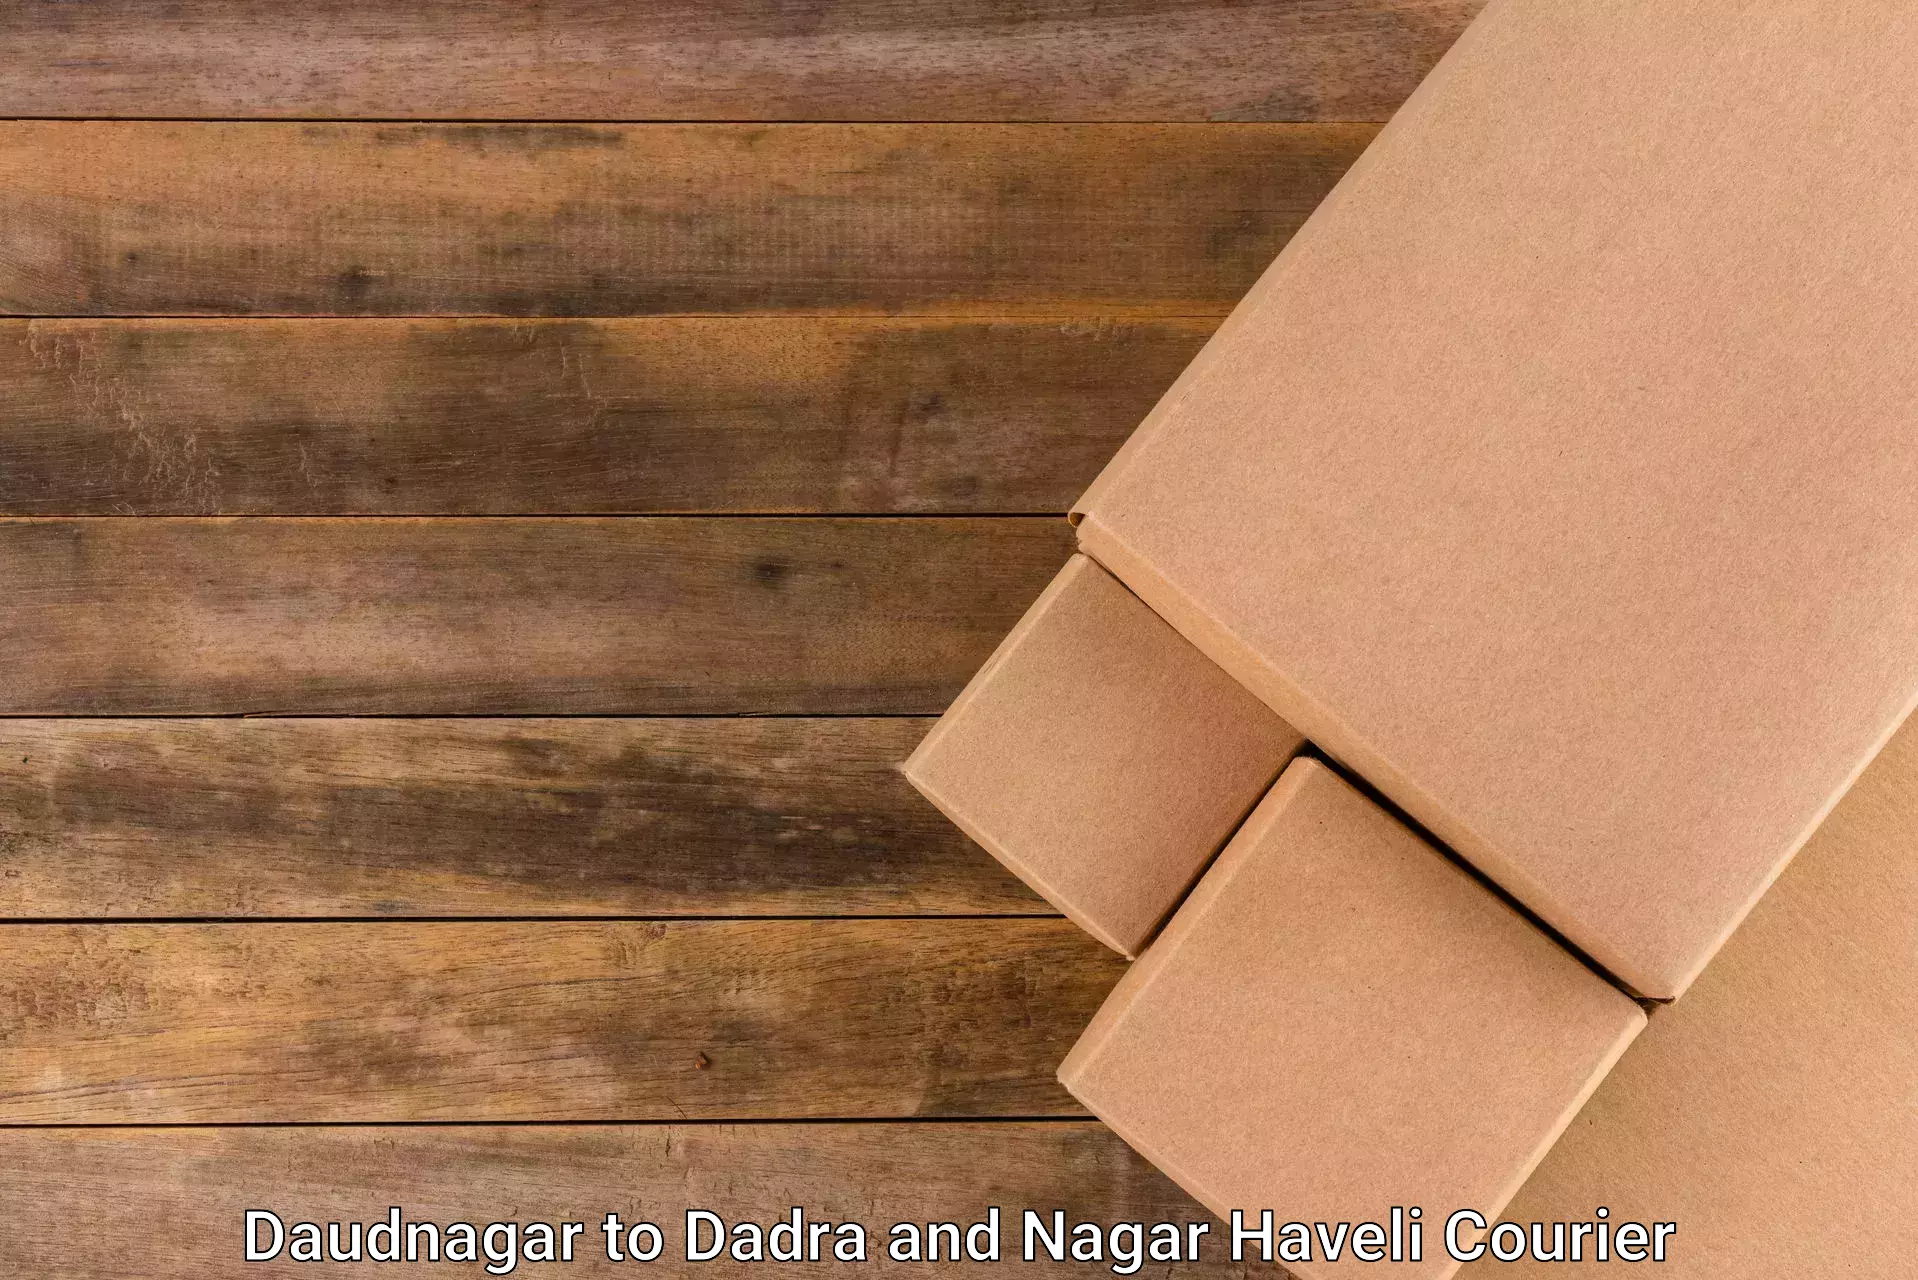 Efficient freight transportation Daudnagar to Dadra and Nagar Haveli